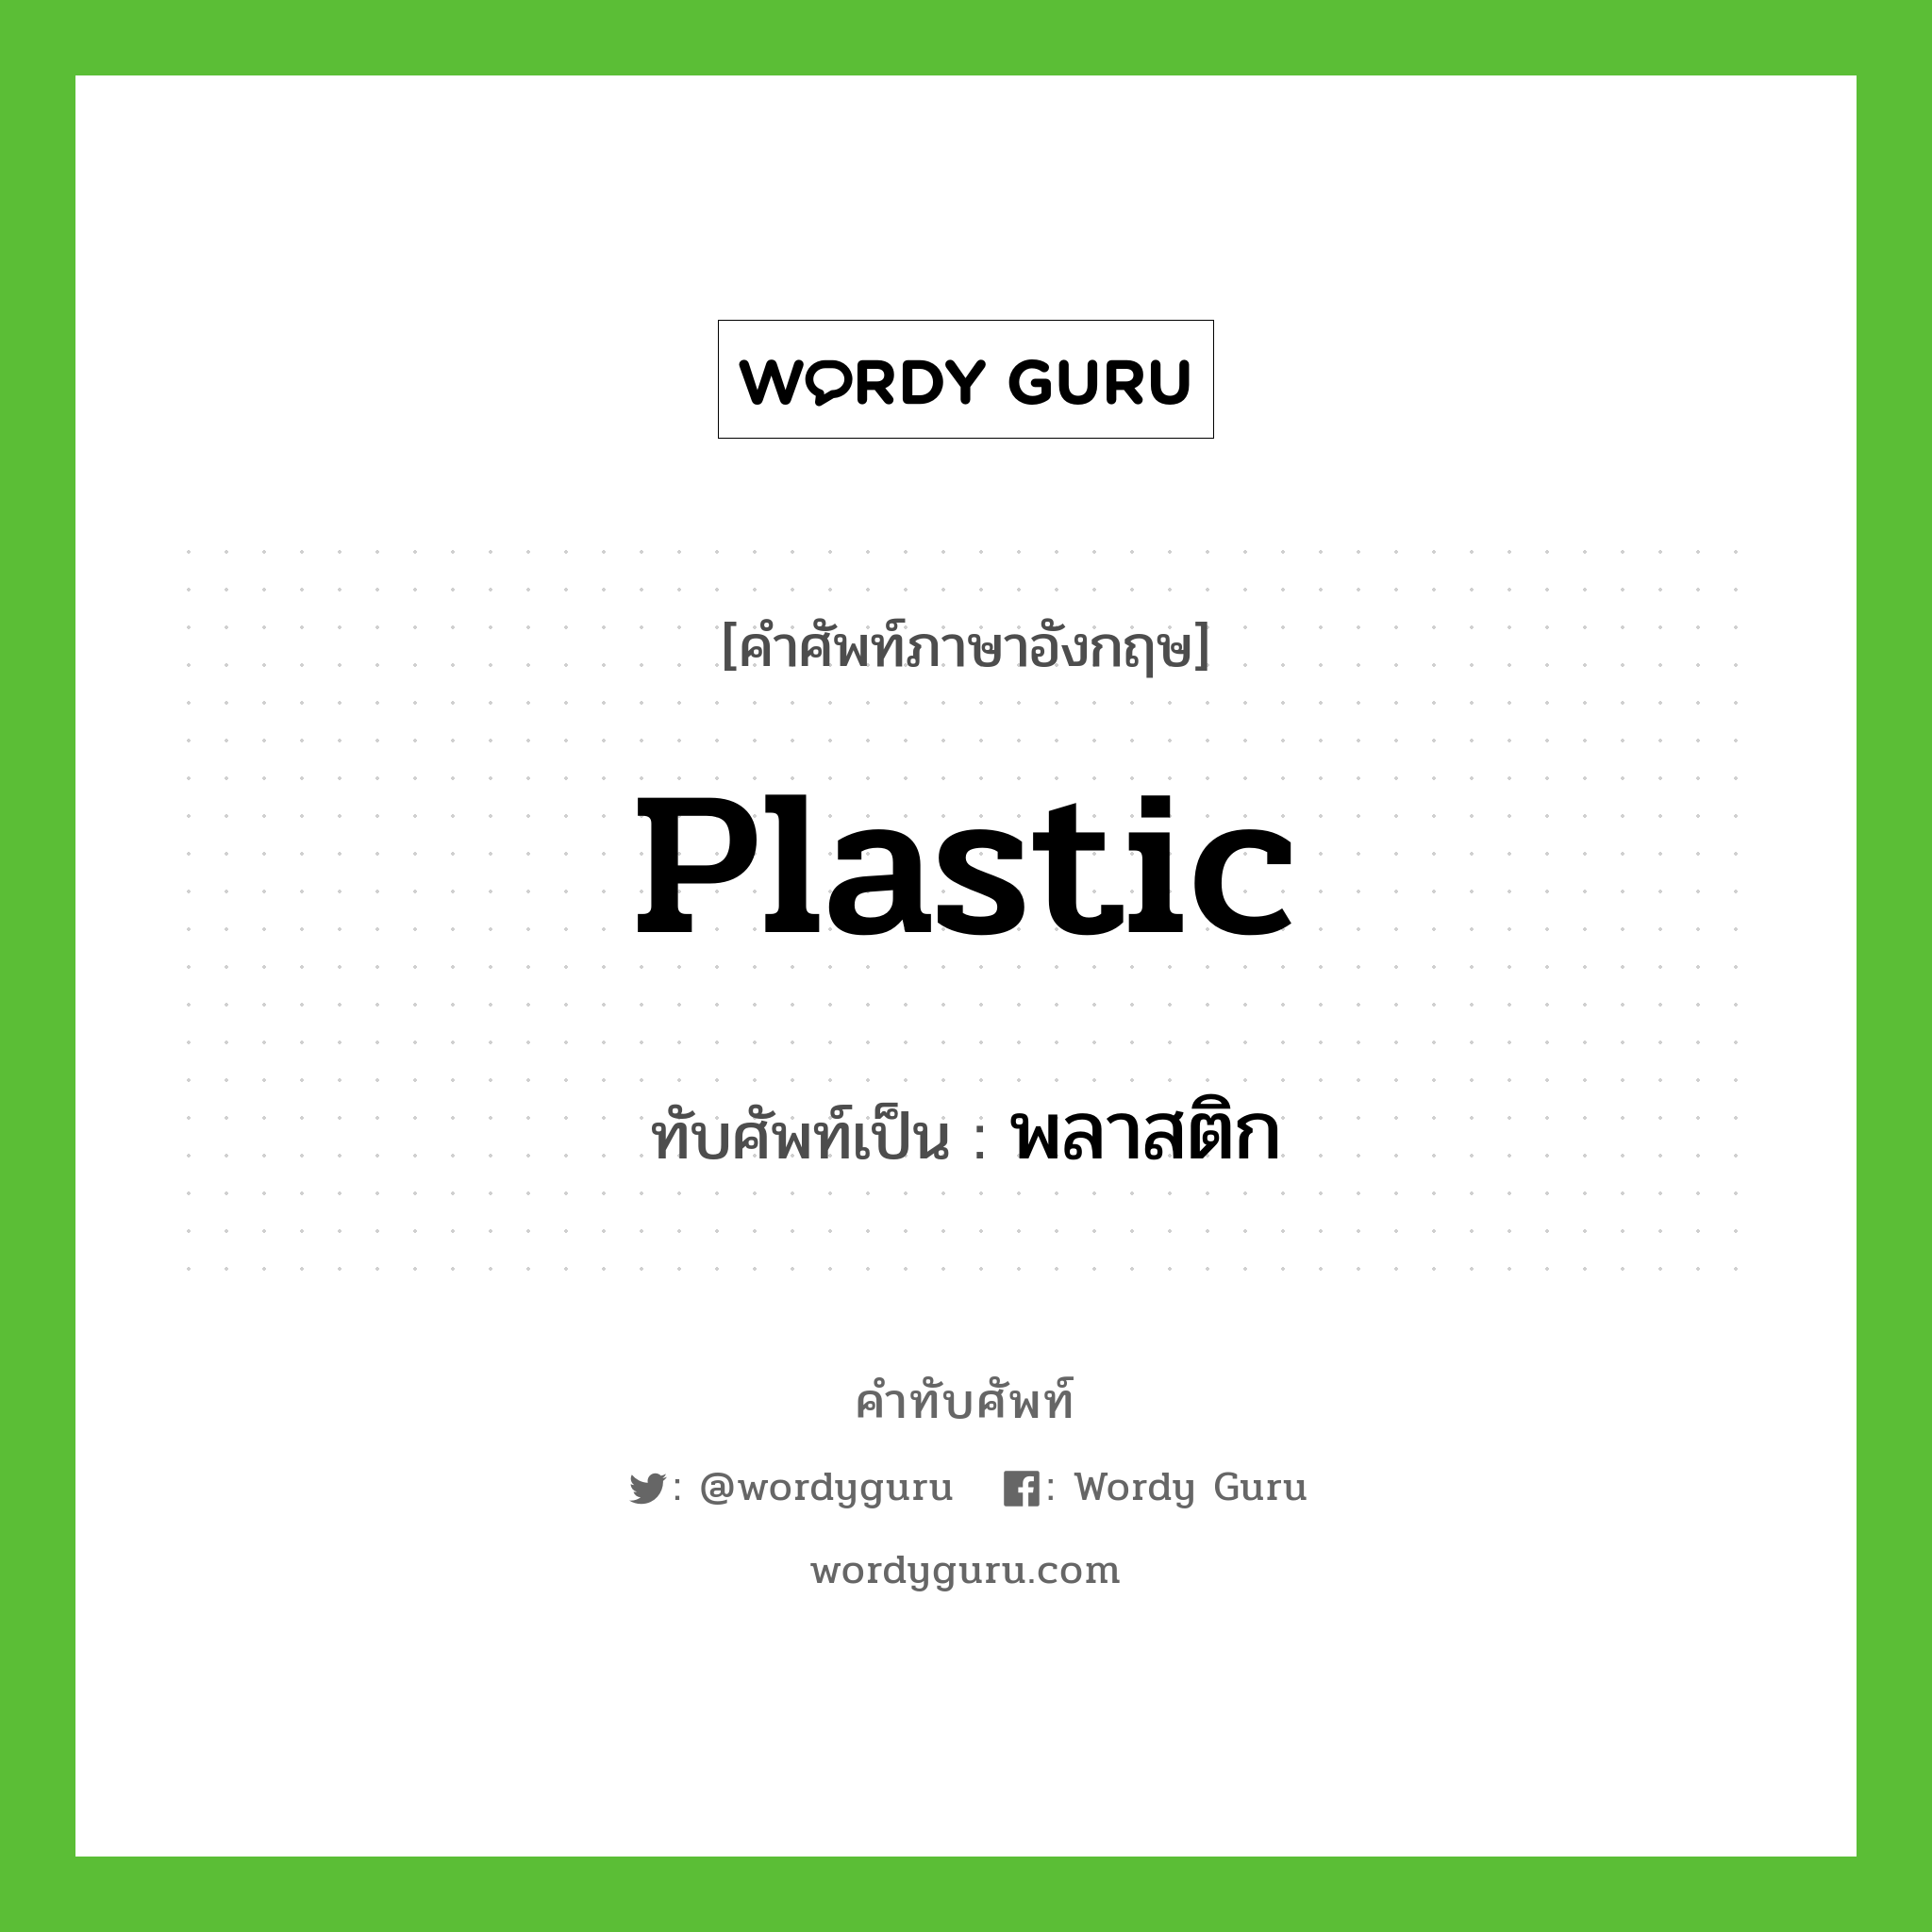 plastic เขียนเป็นคำไทยว่าอะไร?, คำศัพท์ภาษาอังกฤษ plastic ทับศัพท์เป็น พลาสติก